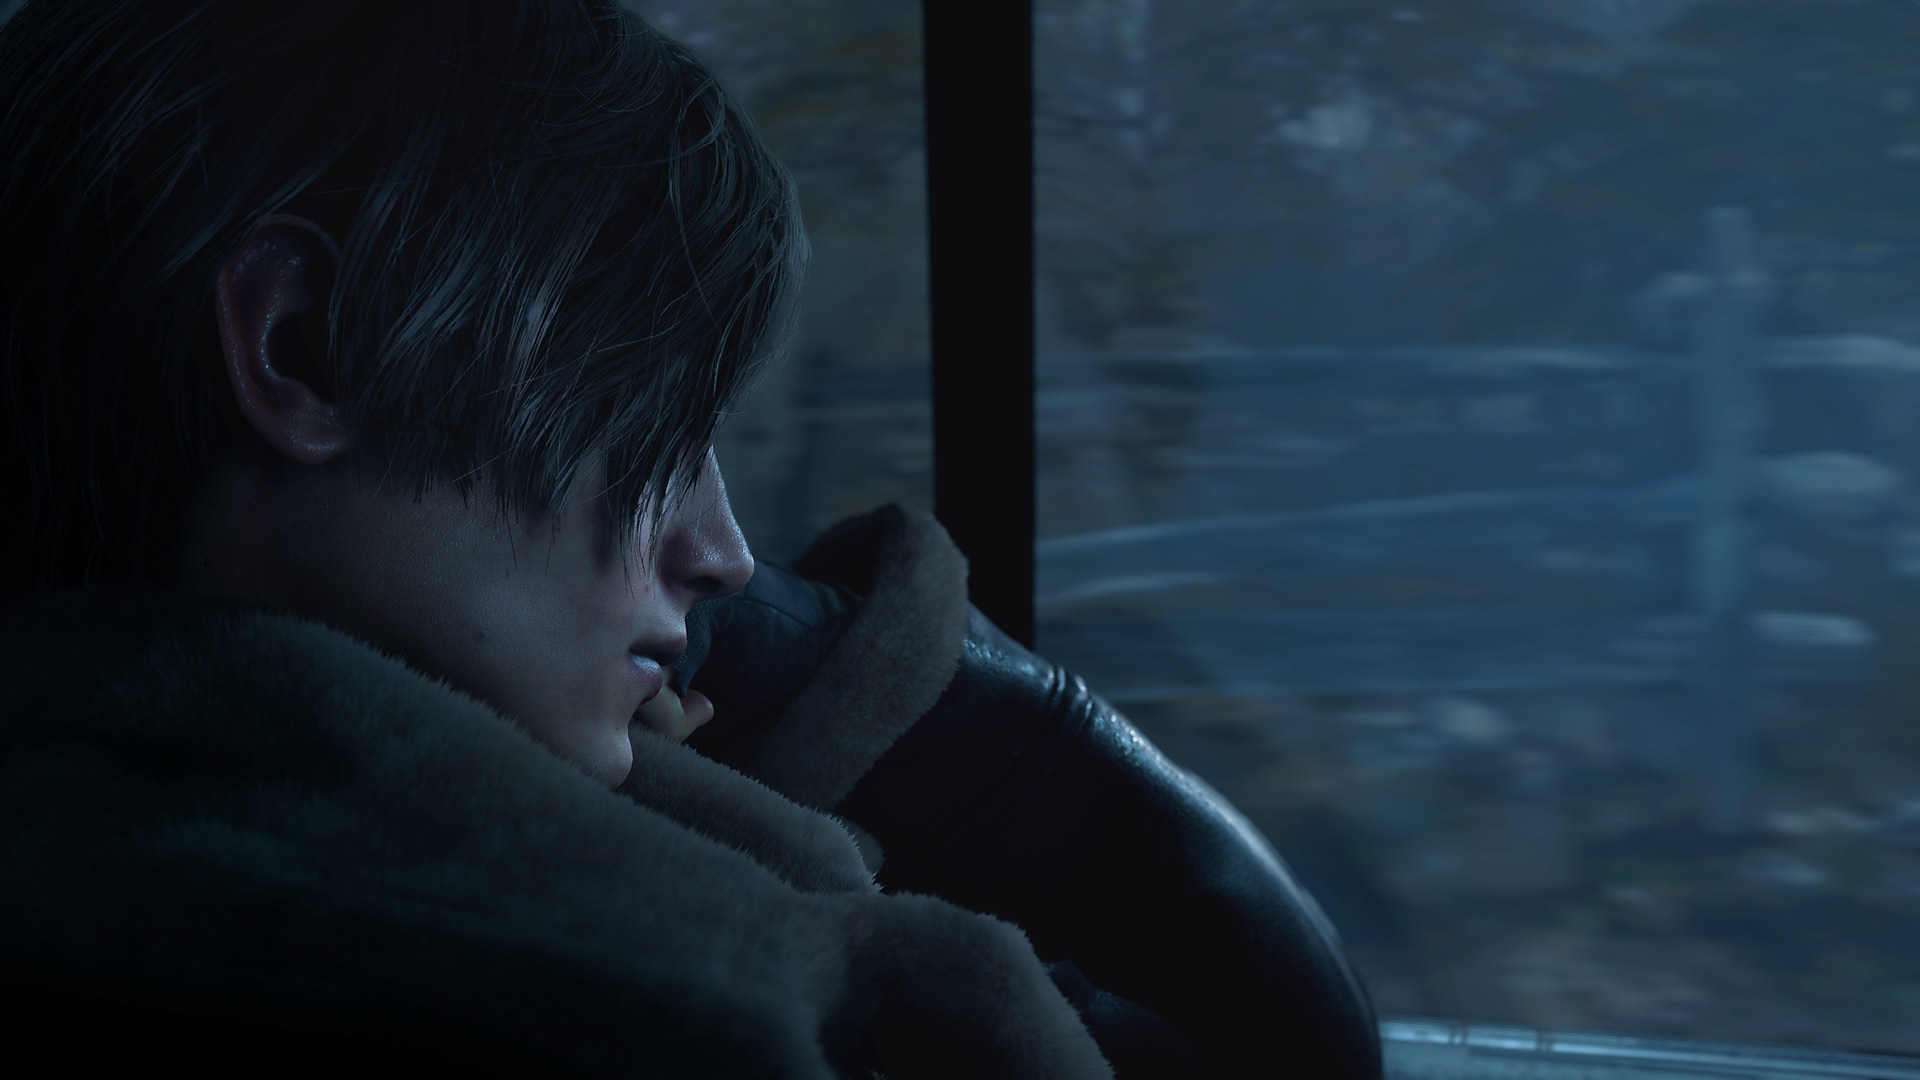 لقطة شاشة من Resident Evil 4 تعرض Leon Kennedy يجلس في المقعد الخلفي في سيارة.